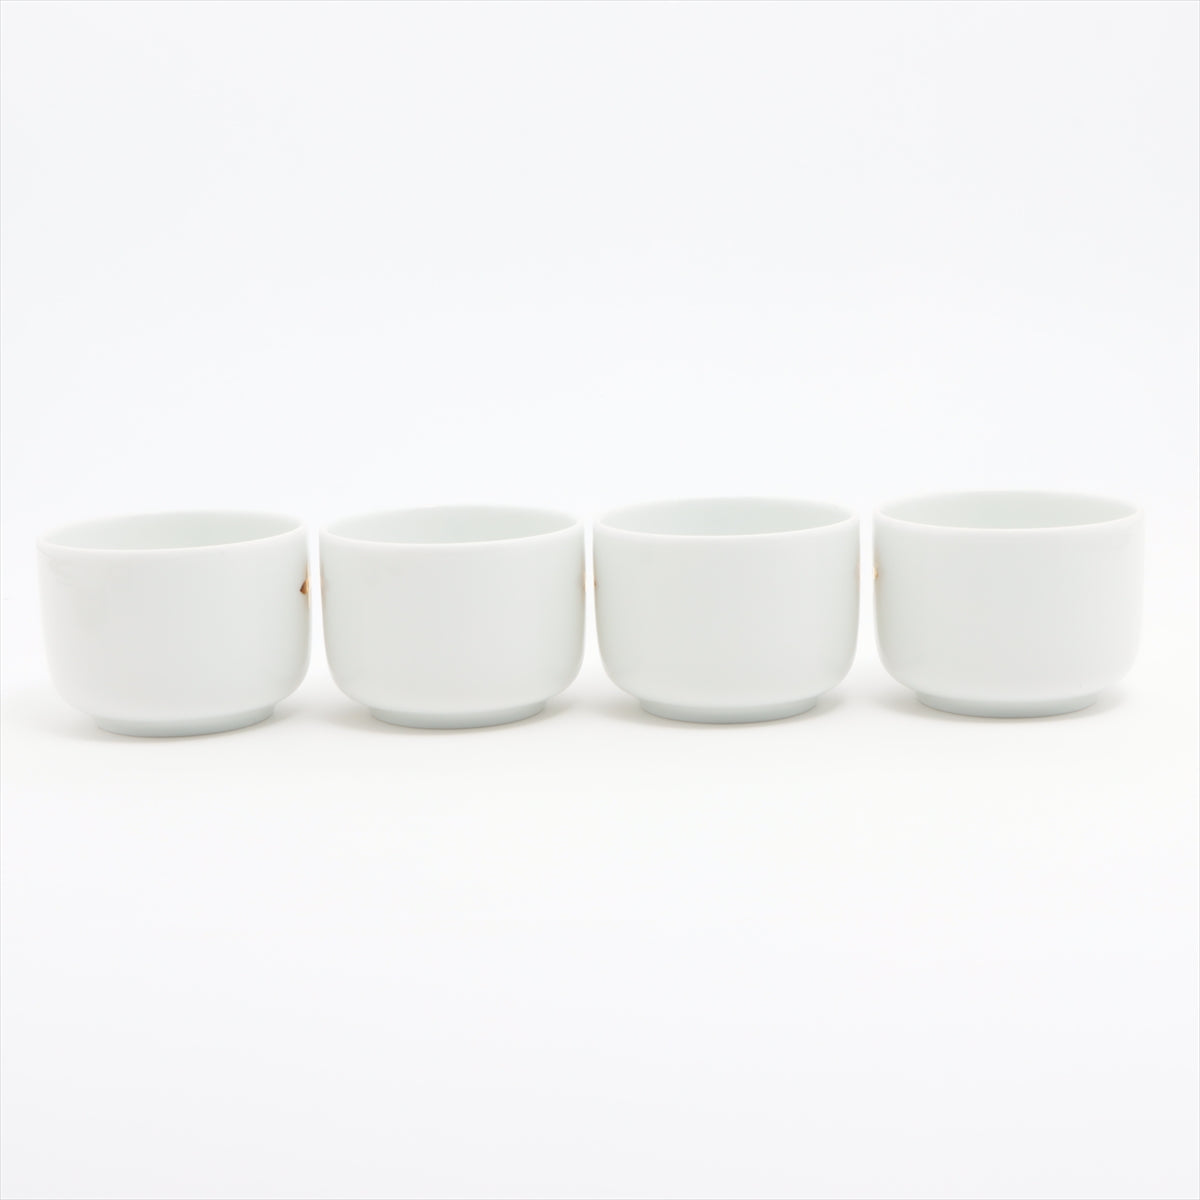 Louis Vuitton GI0821 teacup Porcelain LG0223 cup and saucer Ceramic